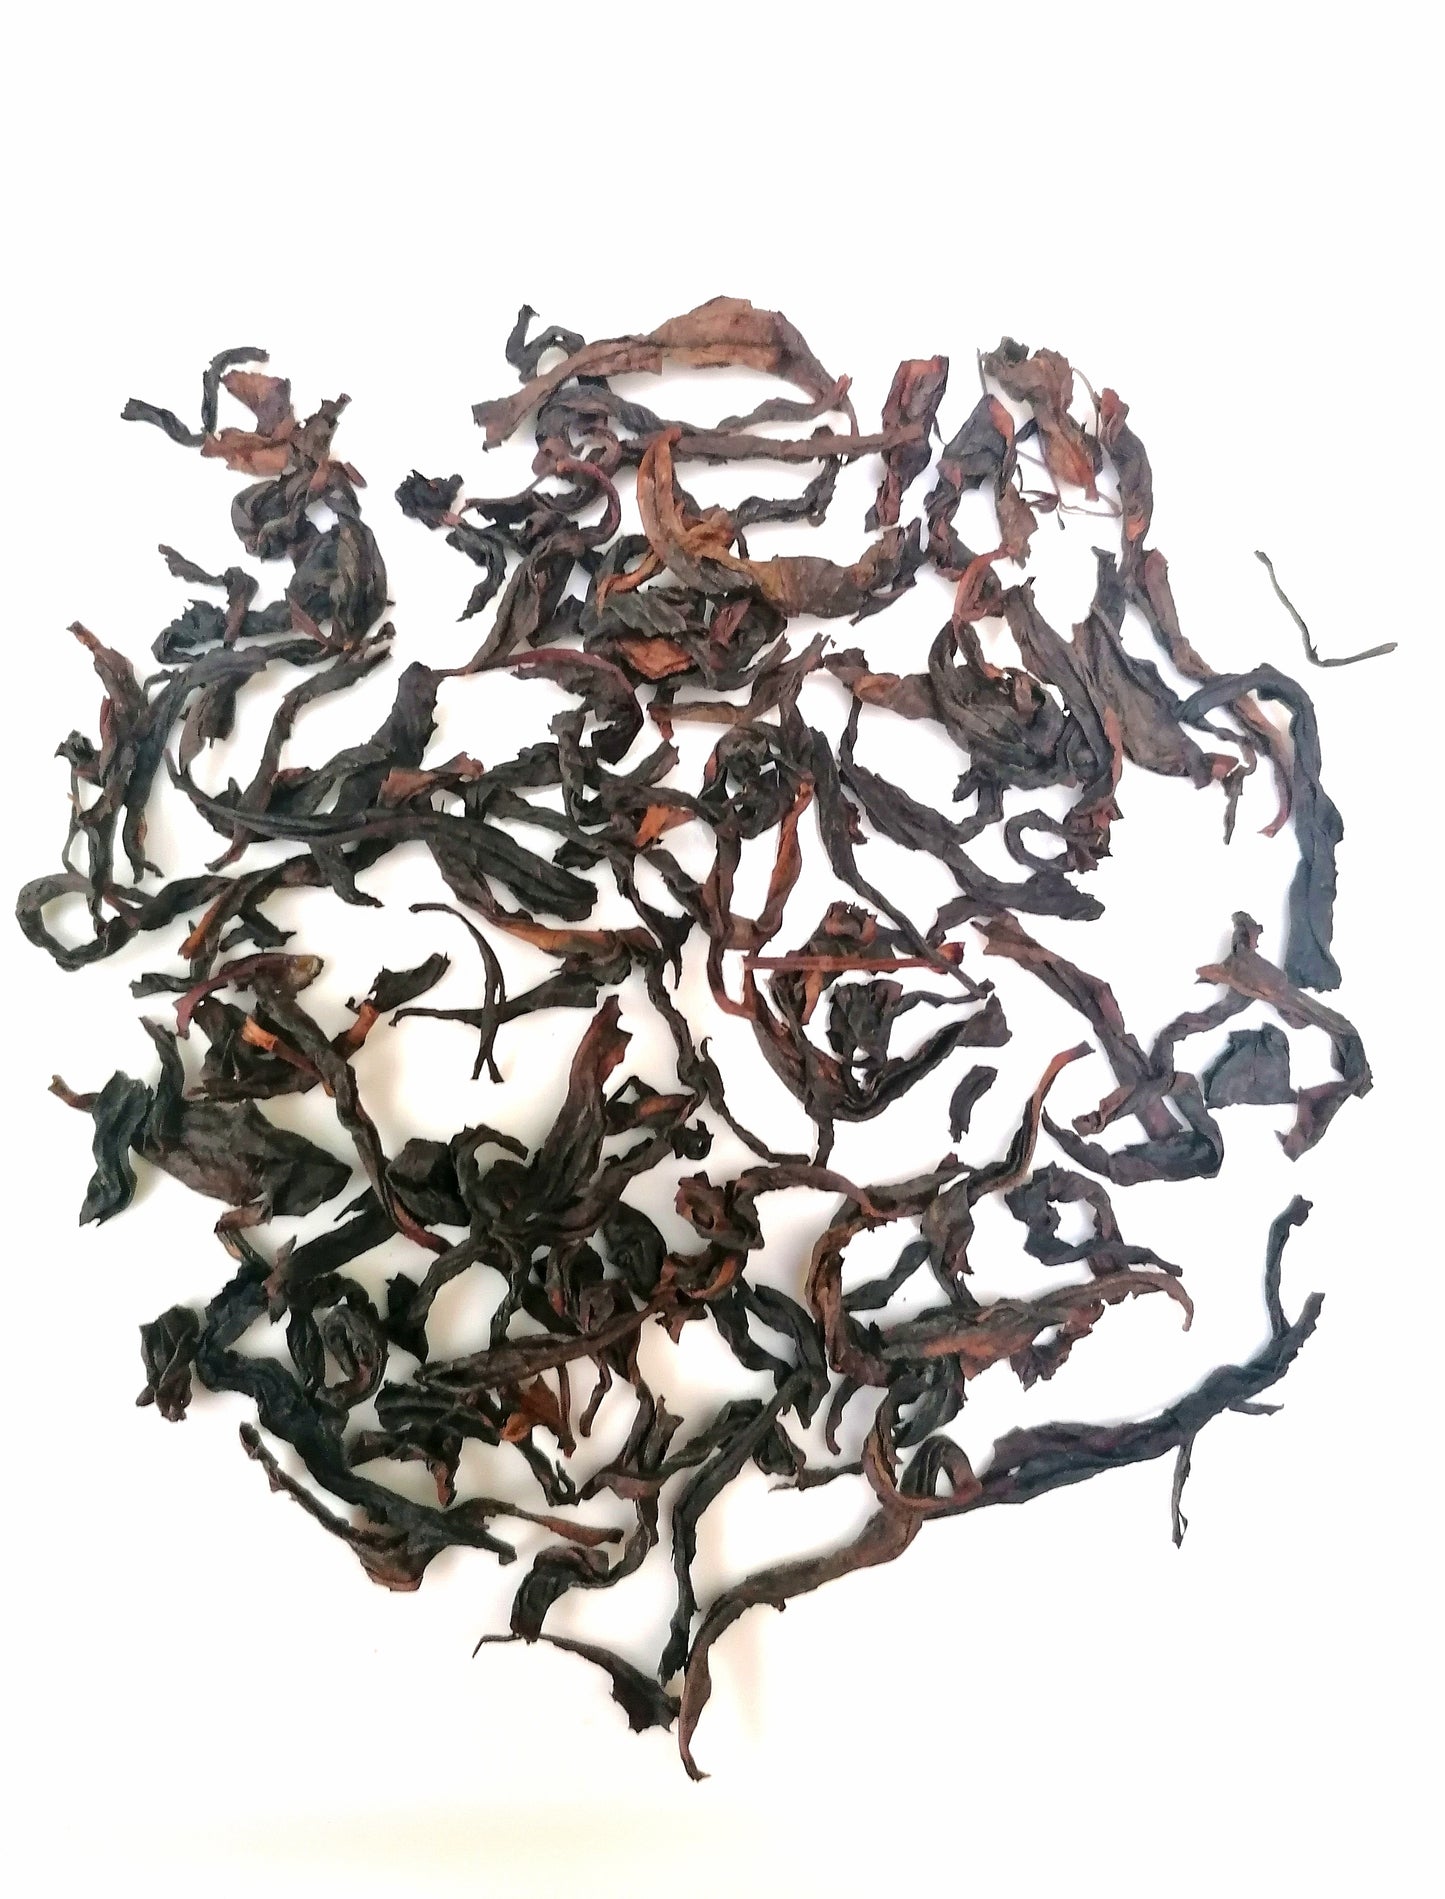 Rou Gui Wuyi Rock Oolong Tea | "Cinnamon Bark" Wuyi Yancha Oolong Tea